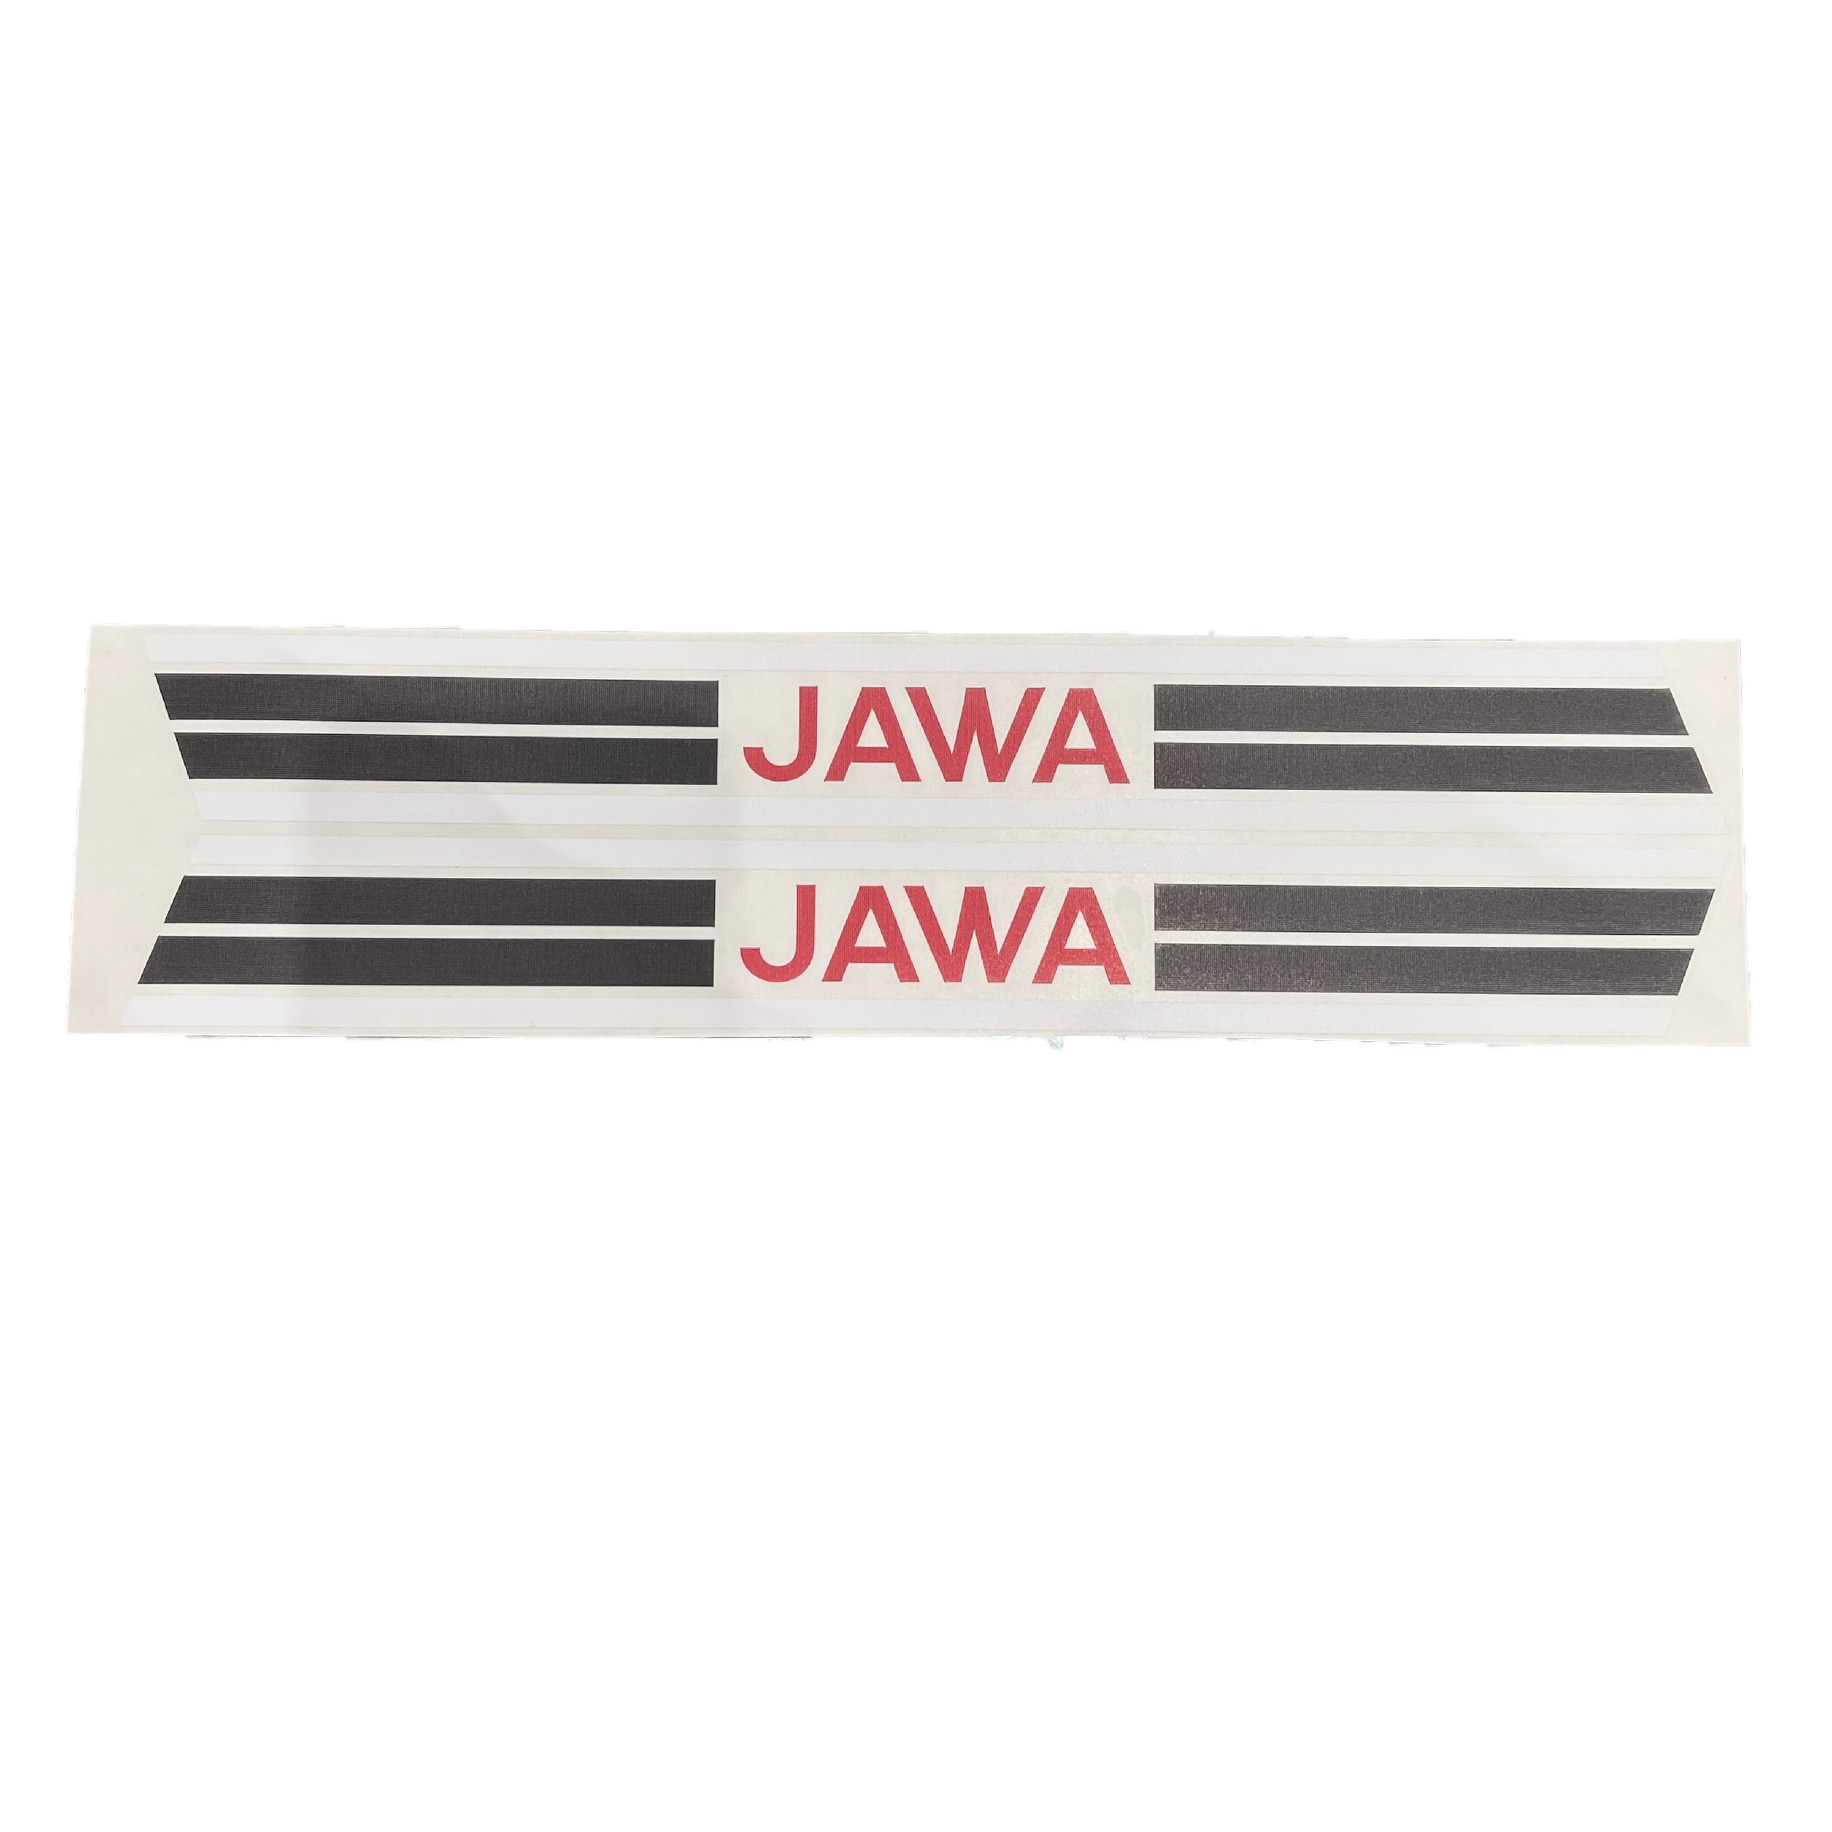 Sticker for tank - Jawa Mustang